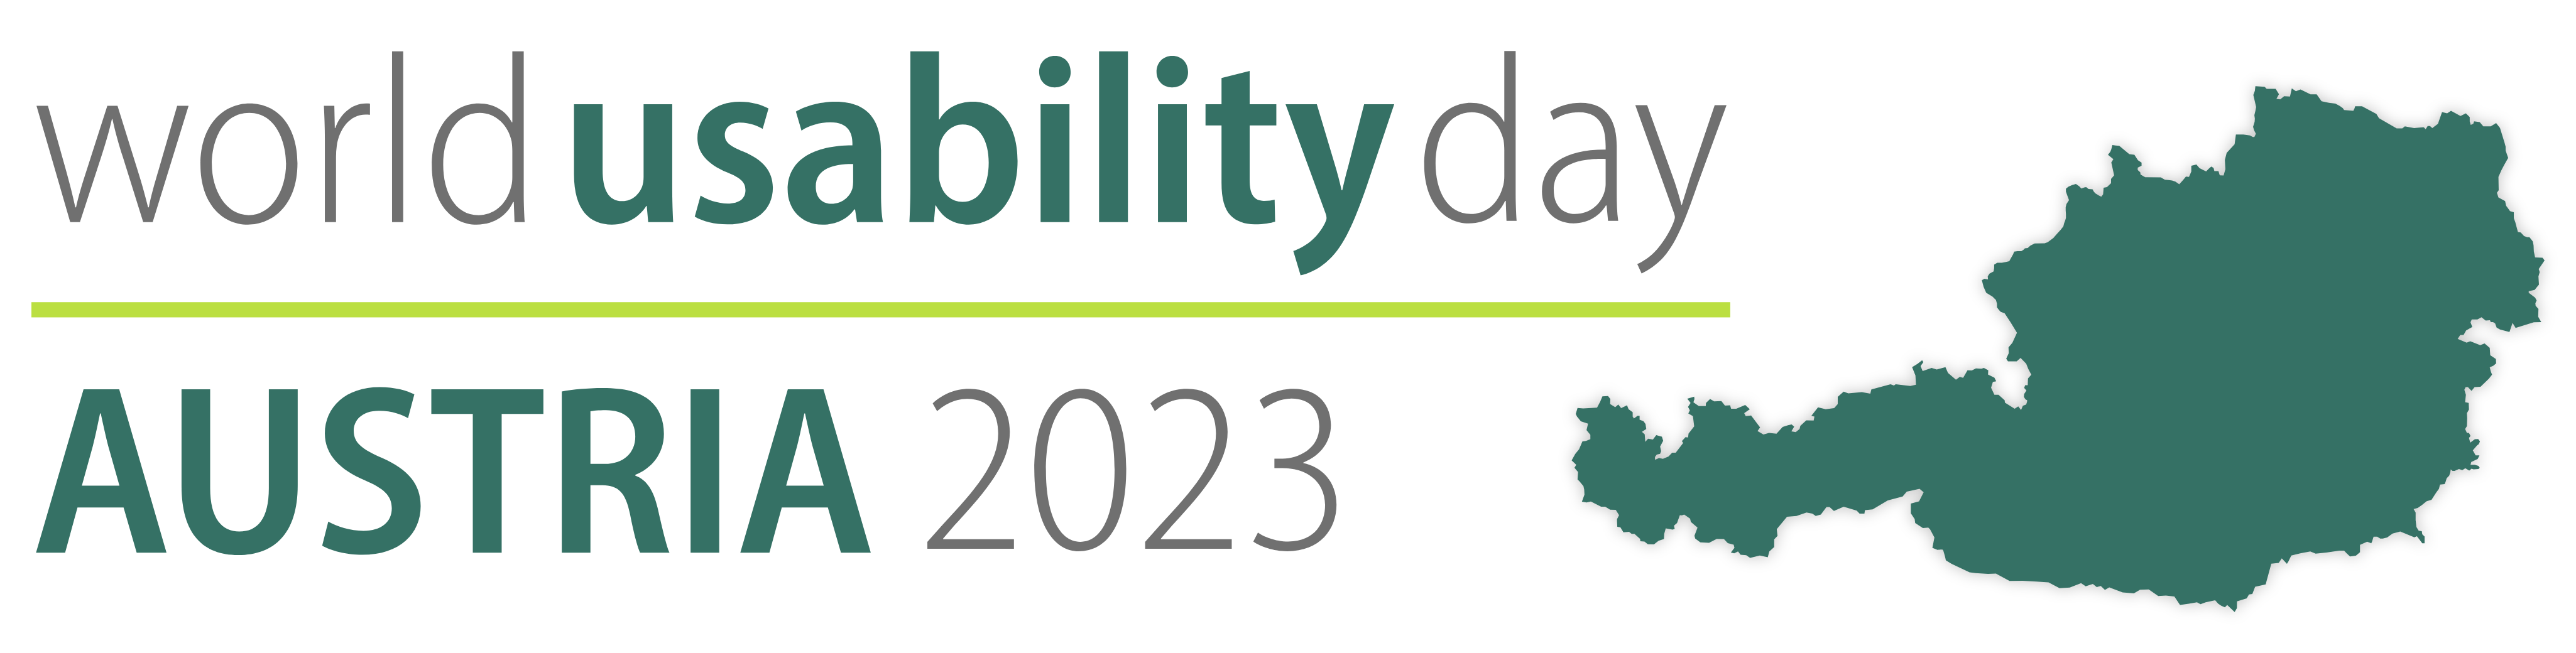 World Usability Day Austria 2023 Logo